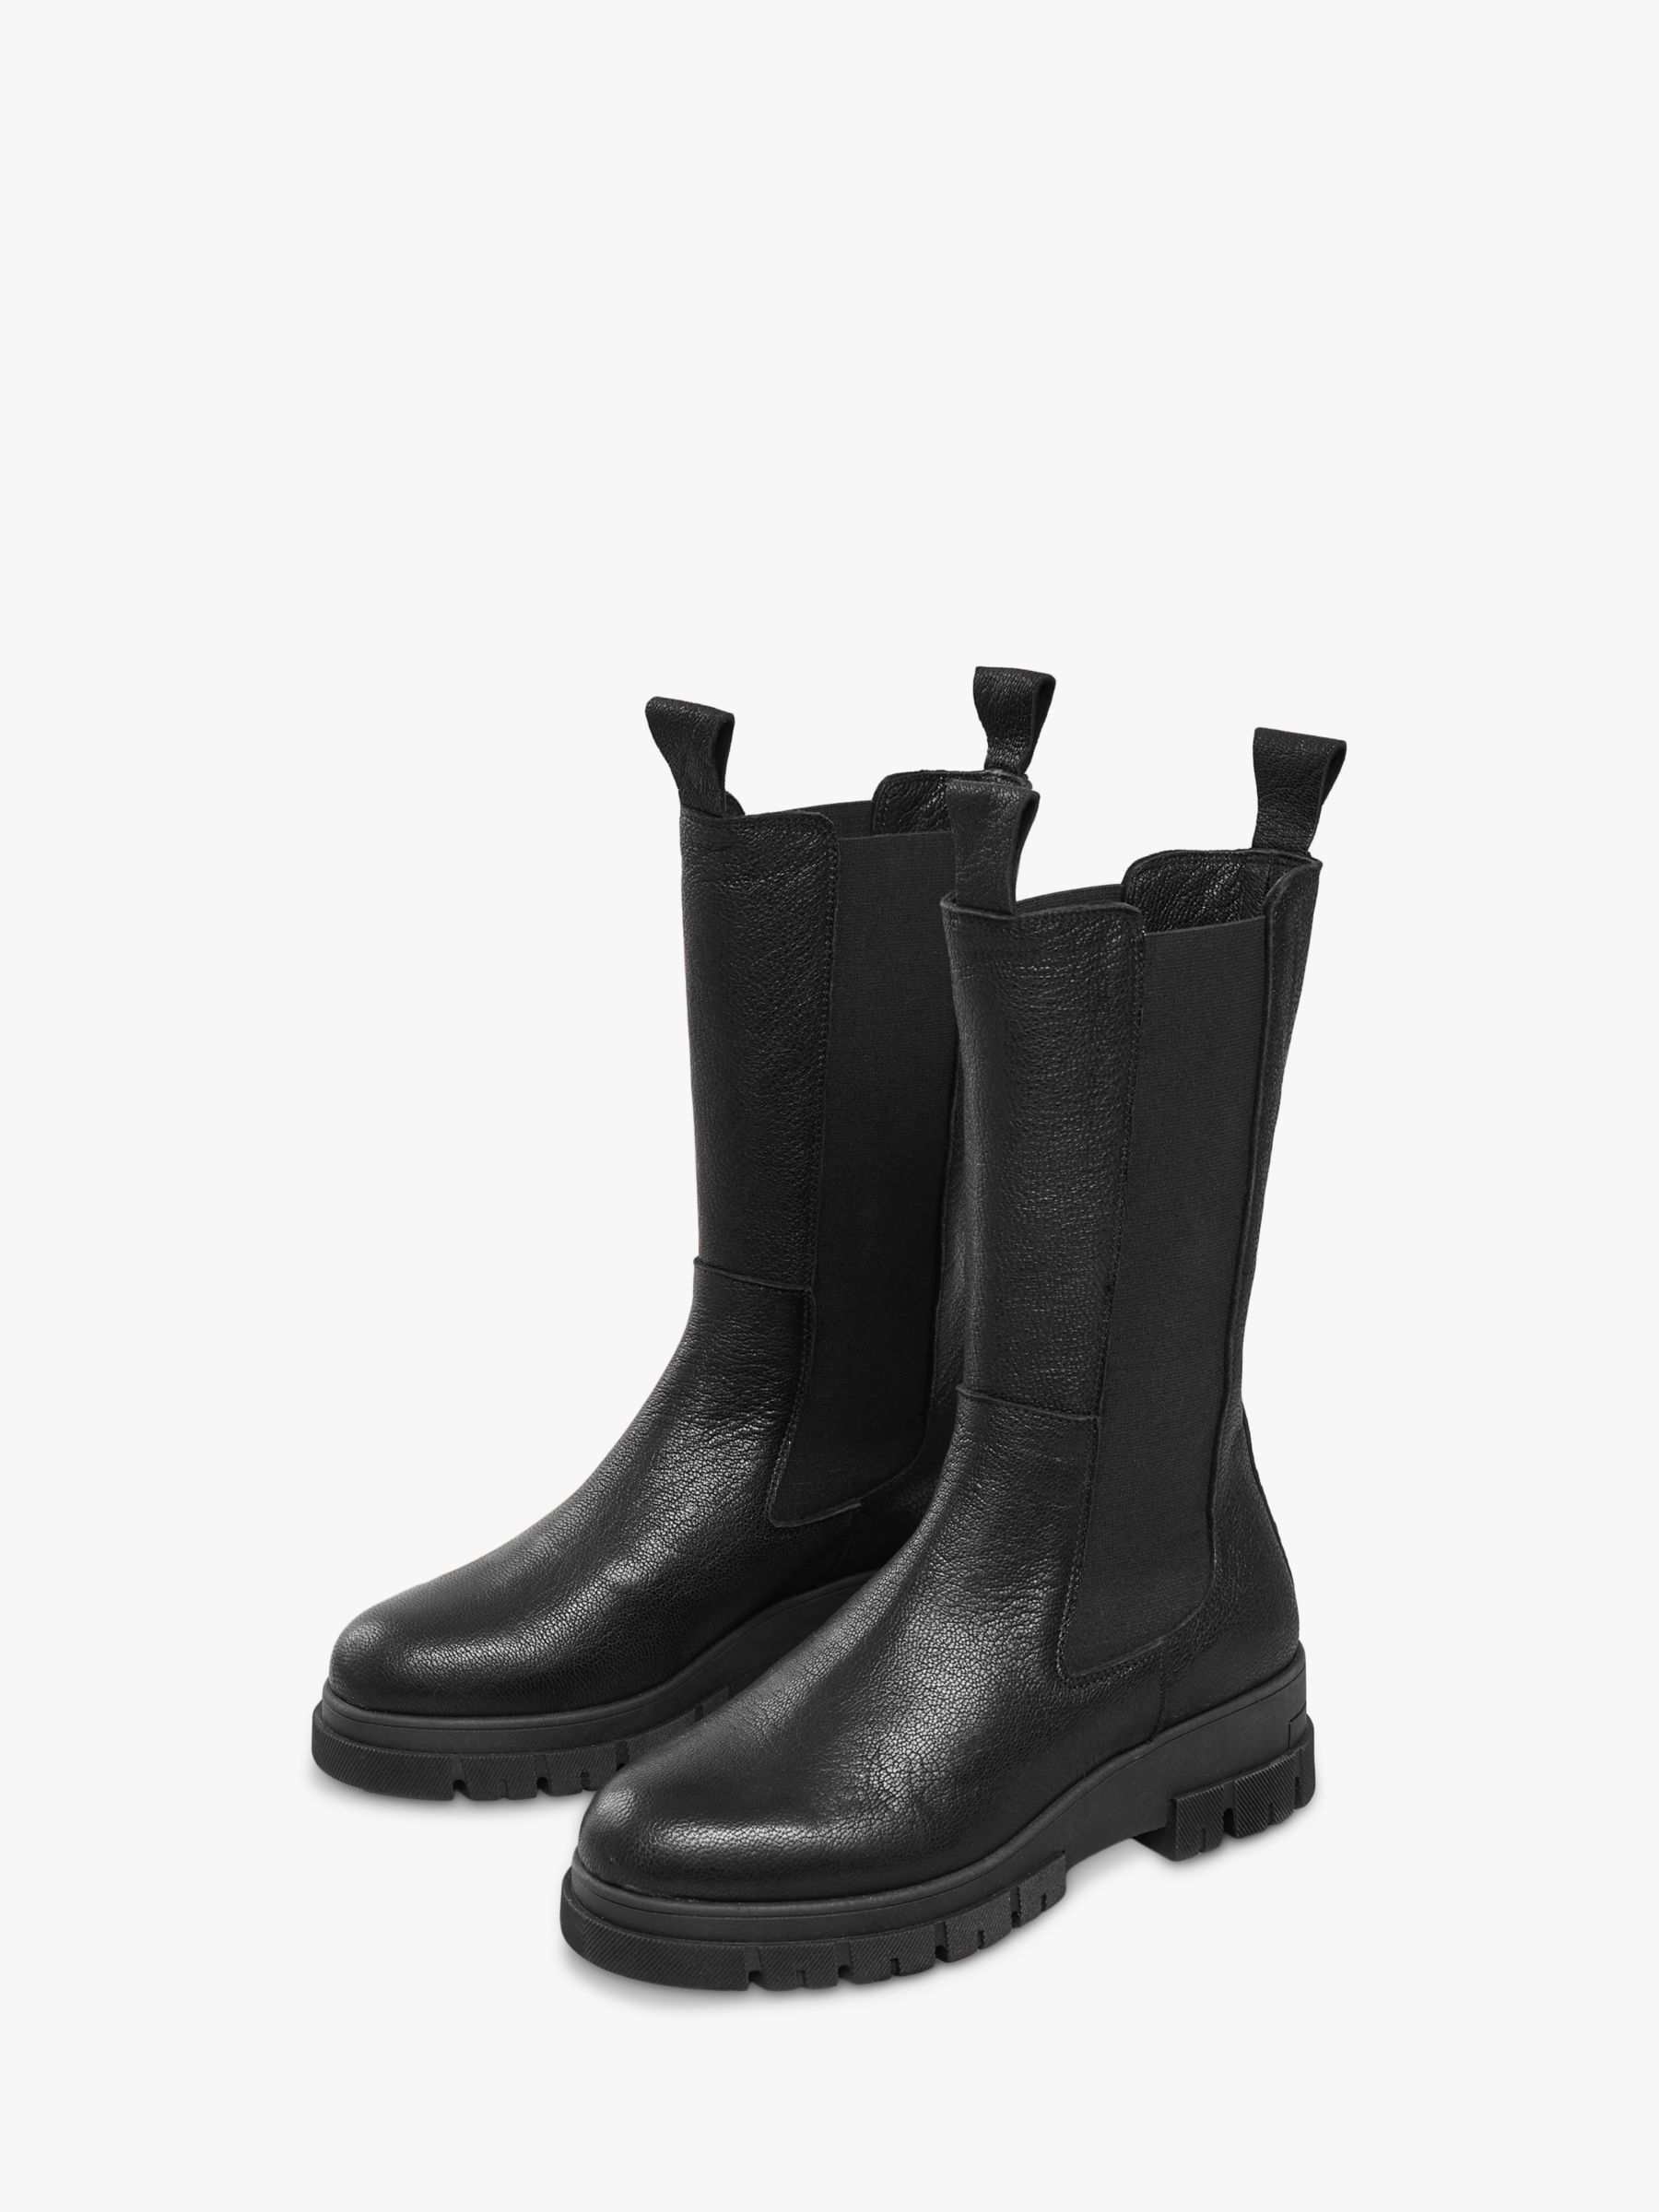 Высокие кожаные ботинки челси Celtic & Co., черные кожаные ботинки дерби celtic